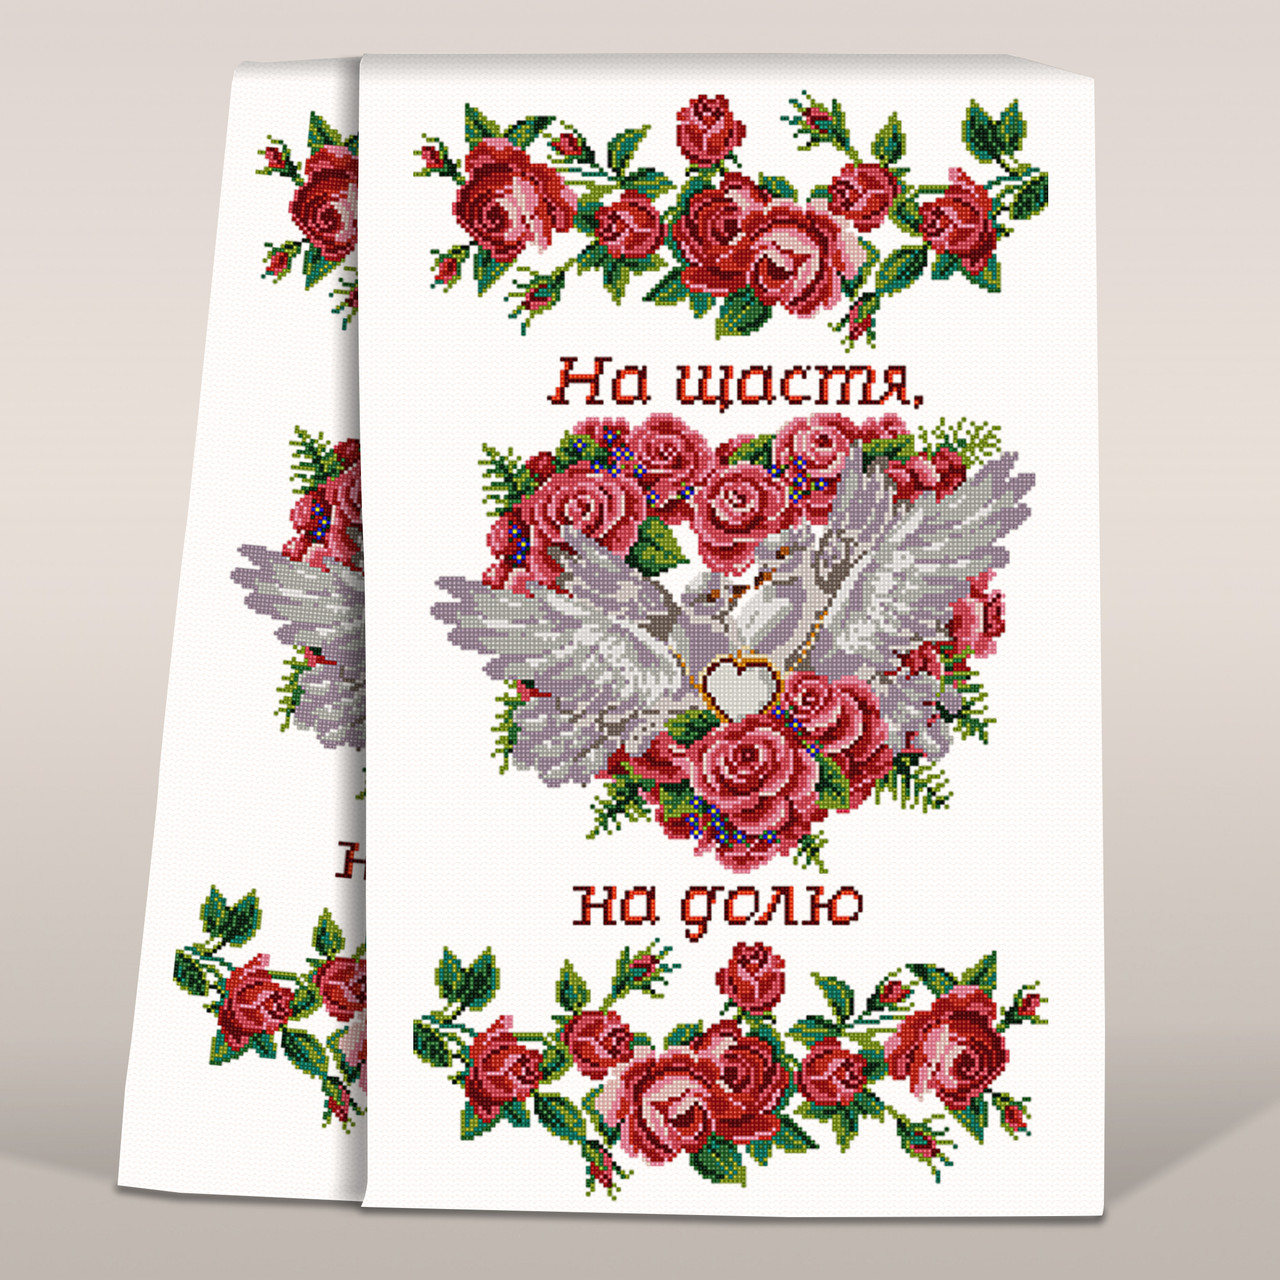 Магазин ТриНити - Купить Схему свадебный рушник под ноги, лучшая цена и быстрая доставка по Украине